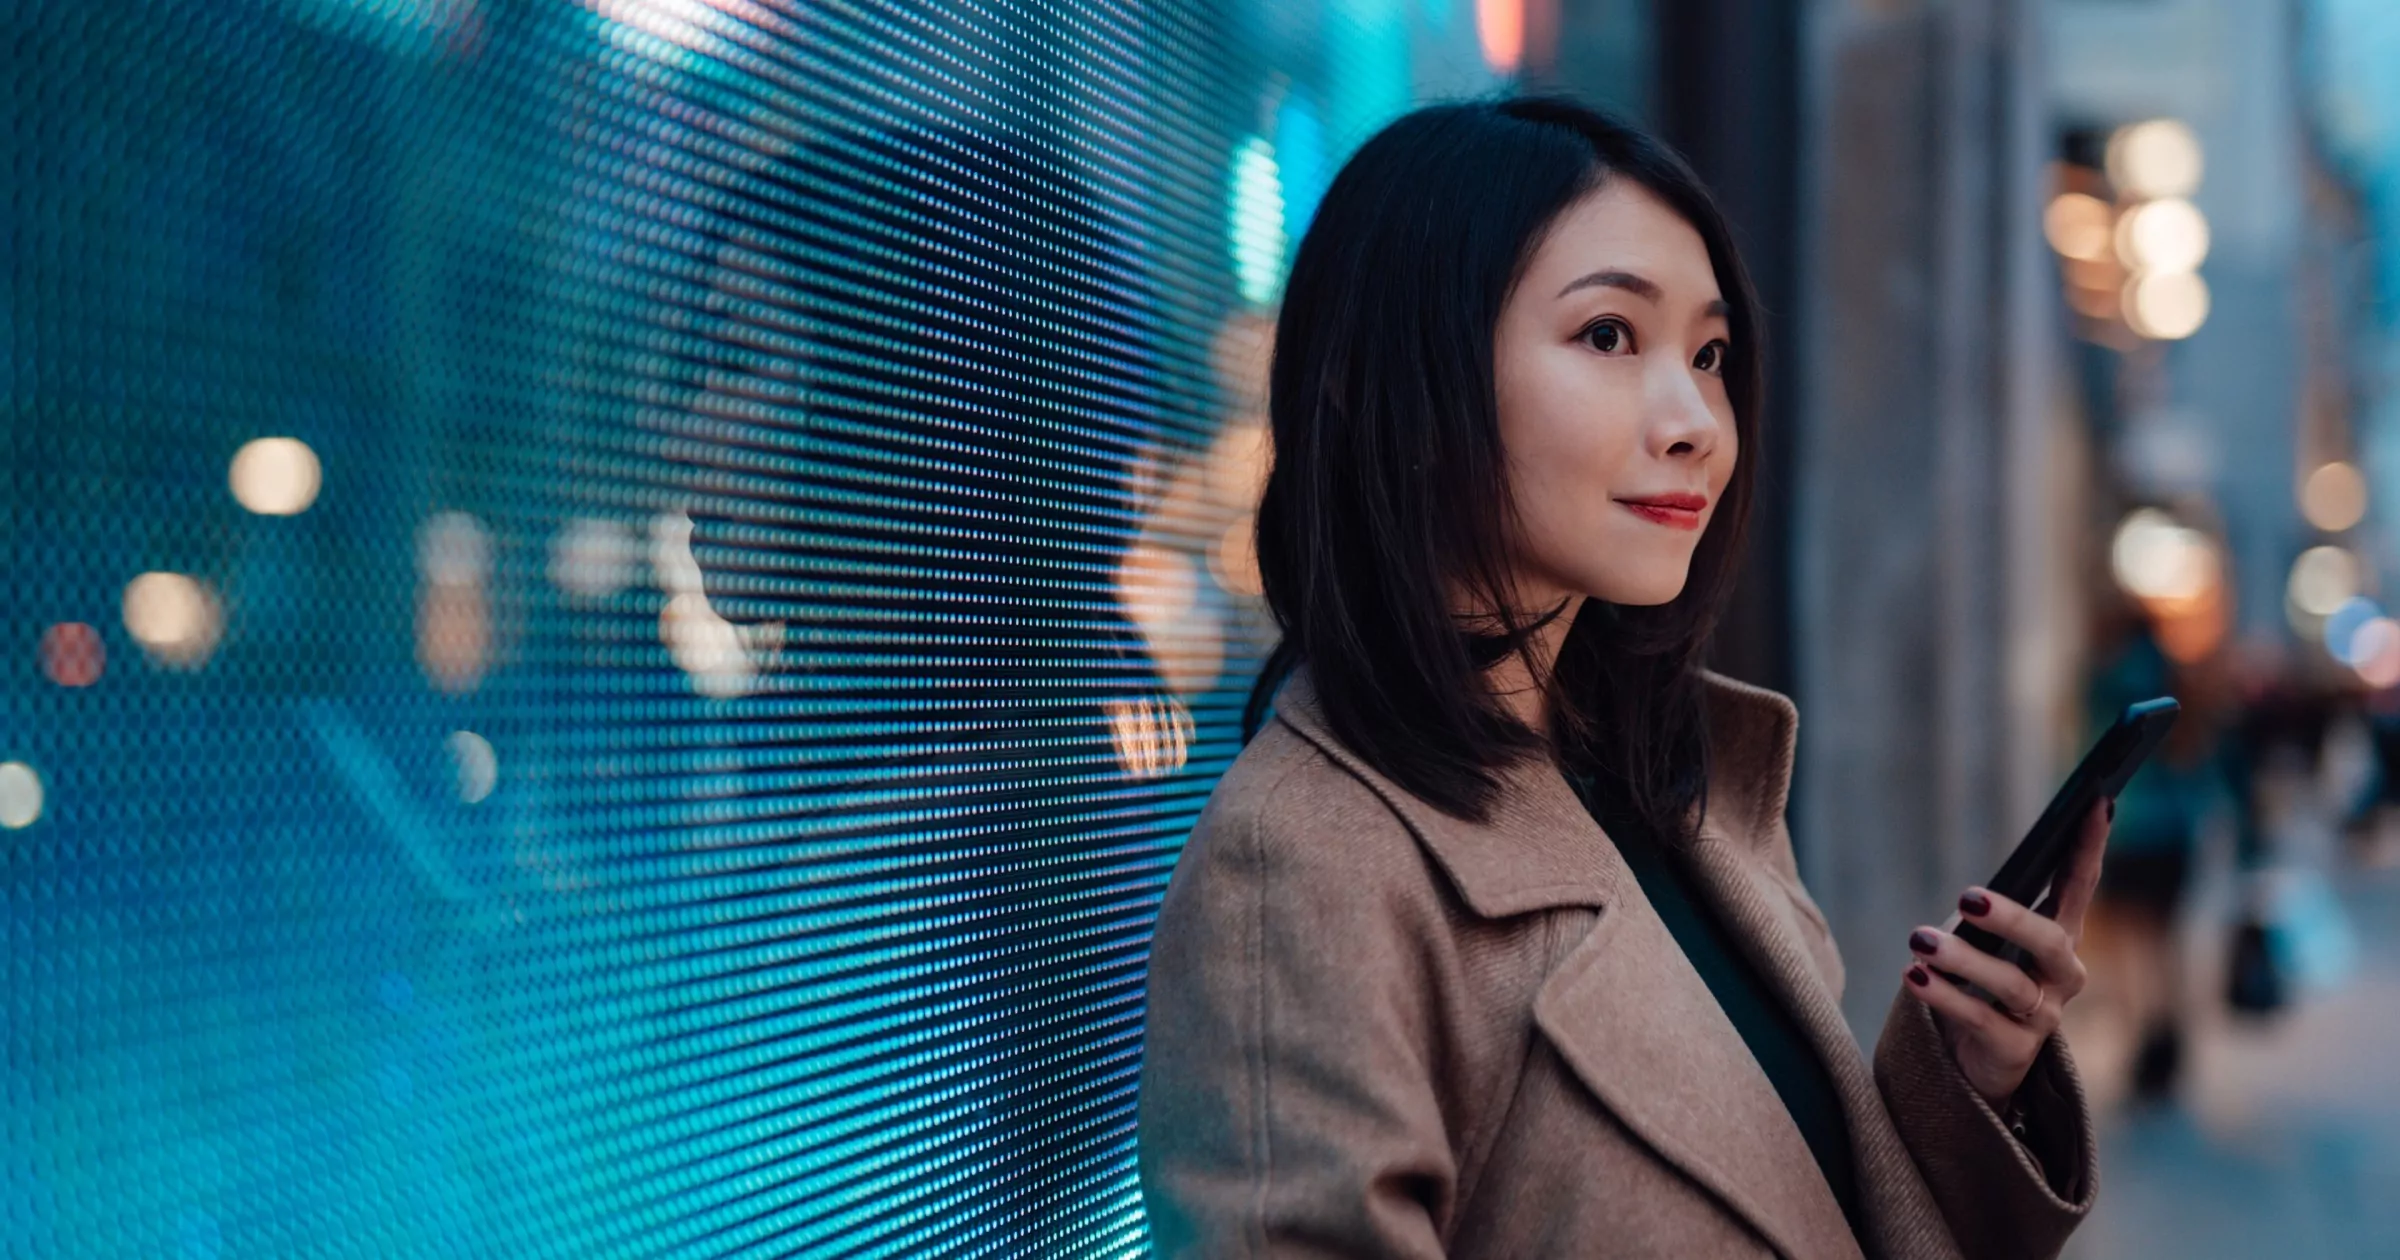 Jonge Aziatische zakenvrouw die mobiele telefoon gebruikt terwijl ze 's nachts op straat wacht. Tegen een enorm digitaal display met op de achtergrond verlichte stadslichten. Verbind de toekomst.